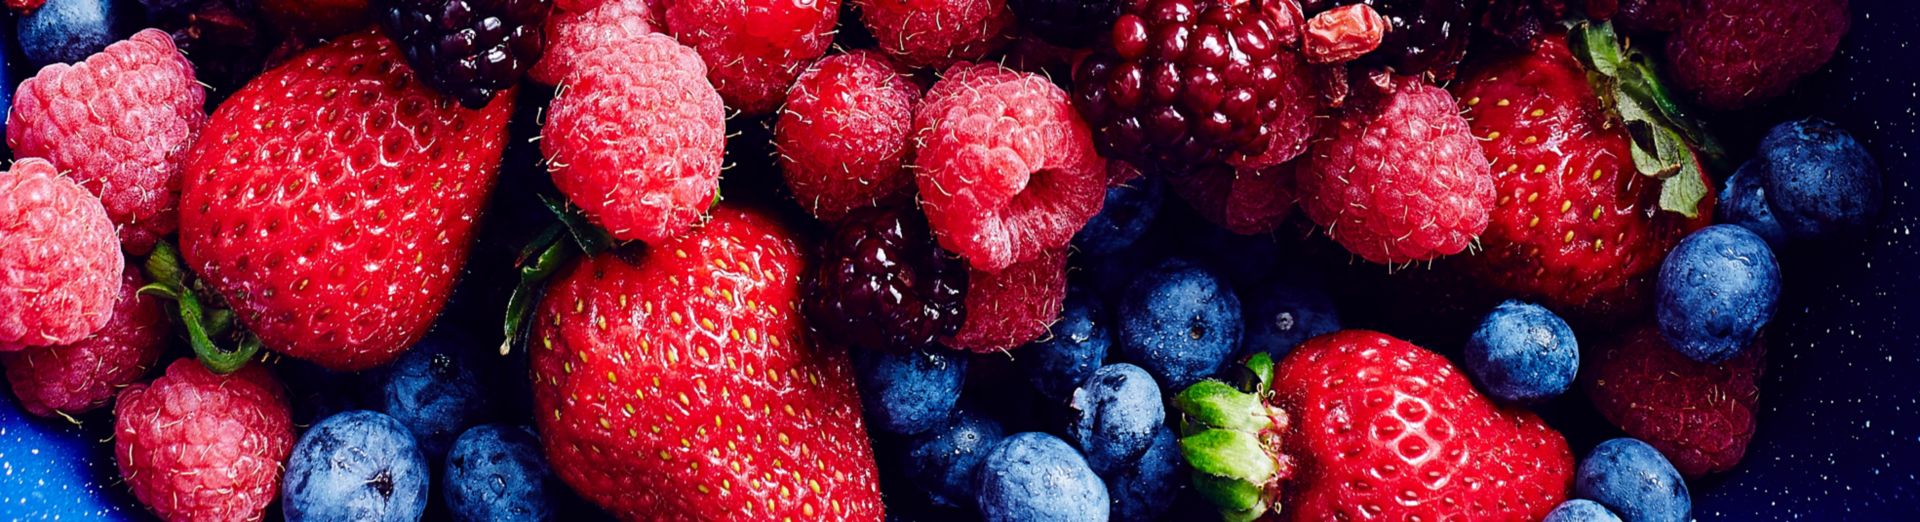 Bild einer Auslage in einem Lebensmittelgeschäft mit einer Fülle an Erdbeeren, Brombeeren, Blaubeeren, Himbeeren und Preiselbeeren